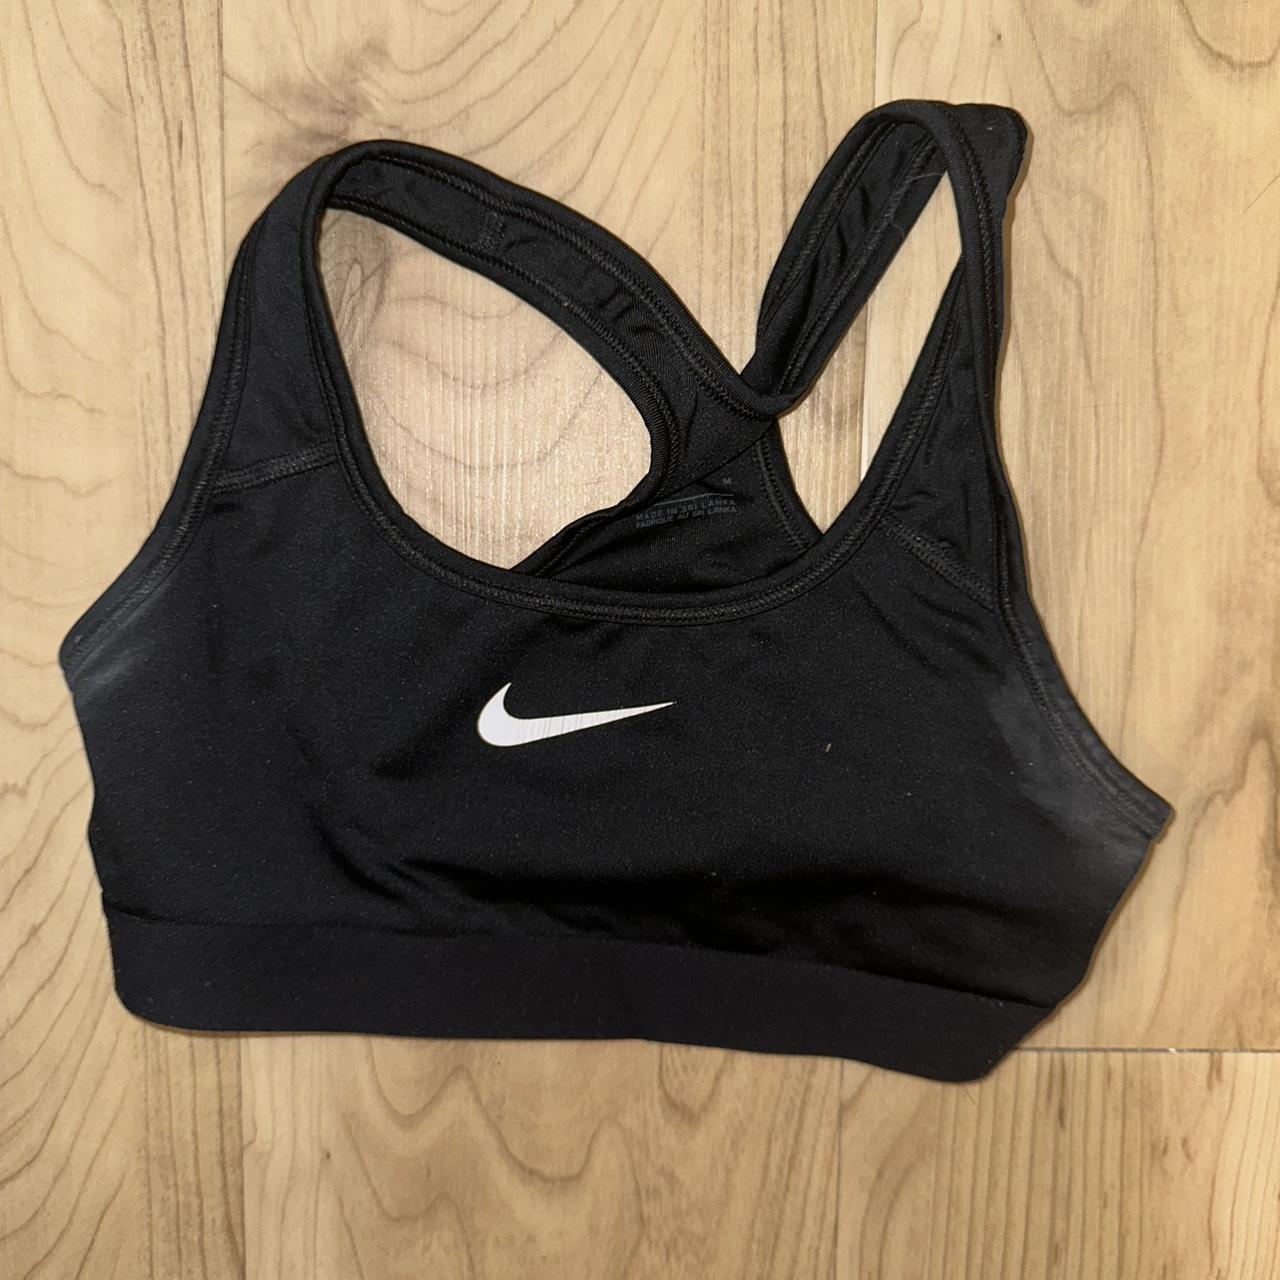 Nike women's sports bra (Size XL) 💛💛NO PAYPAL💛💛 - Depop